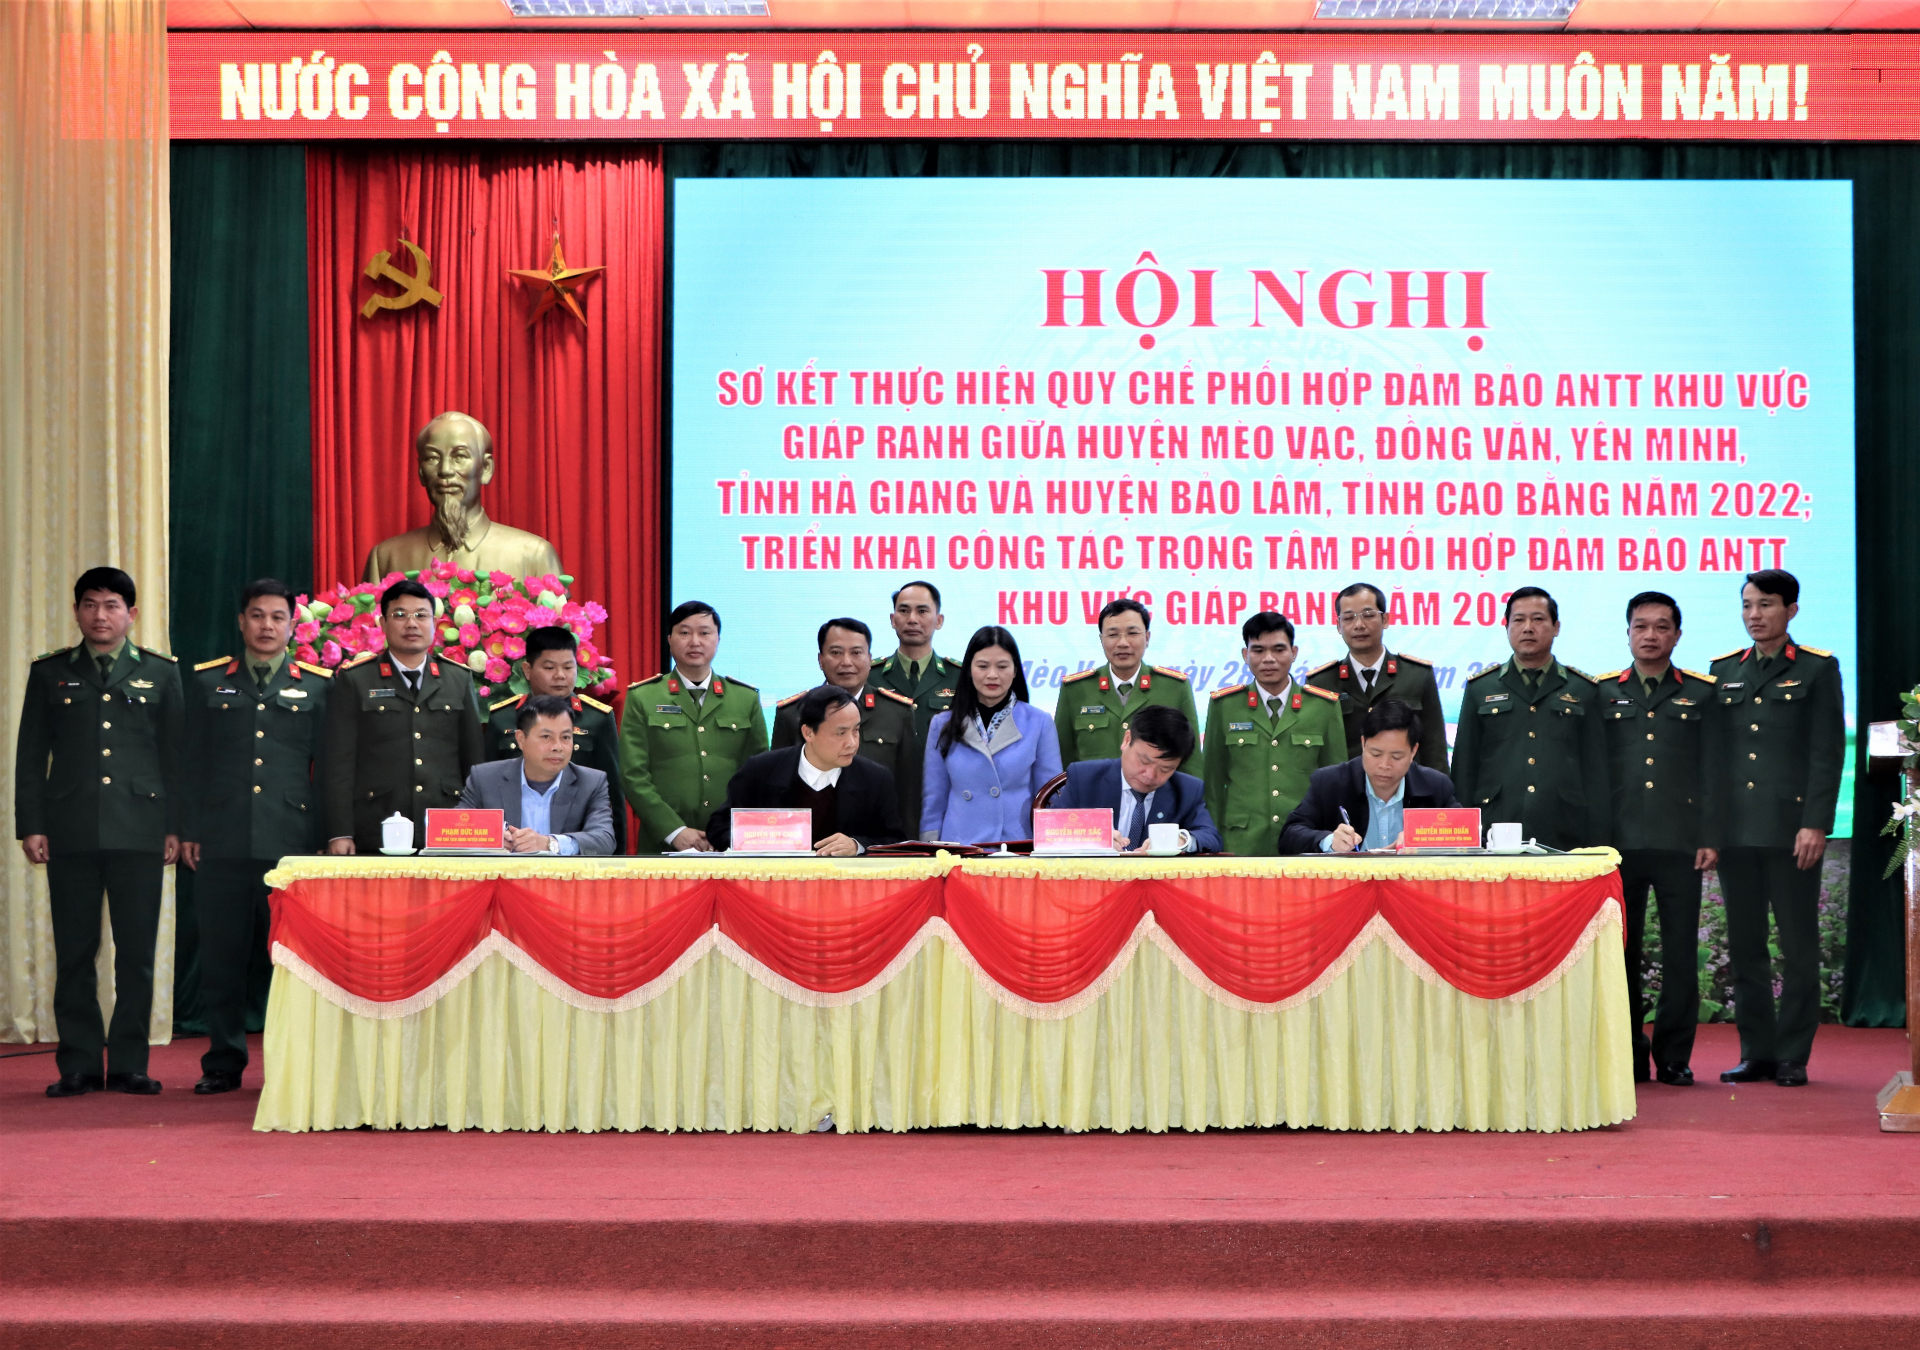 Ký kết bàn giao chủ trì thực hiện sơ kết công tác phối hợp đảm bảo ANTT khu vực giáp ranh cấp huyện giữa tỉnh Hà Giang với tỉnh Cao Bằng trong năm 2023.